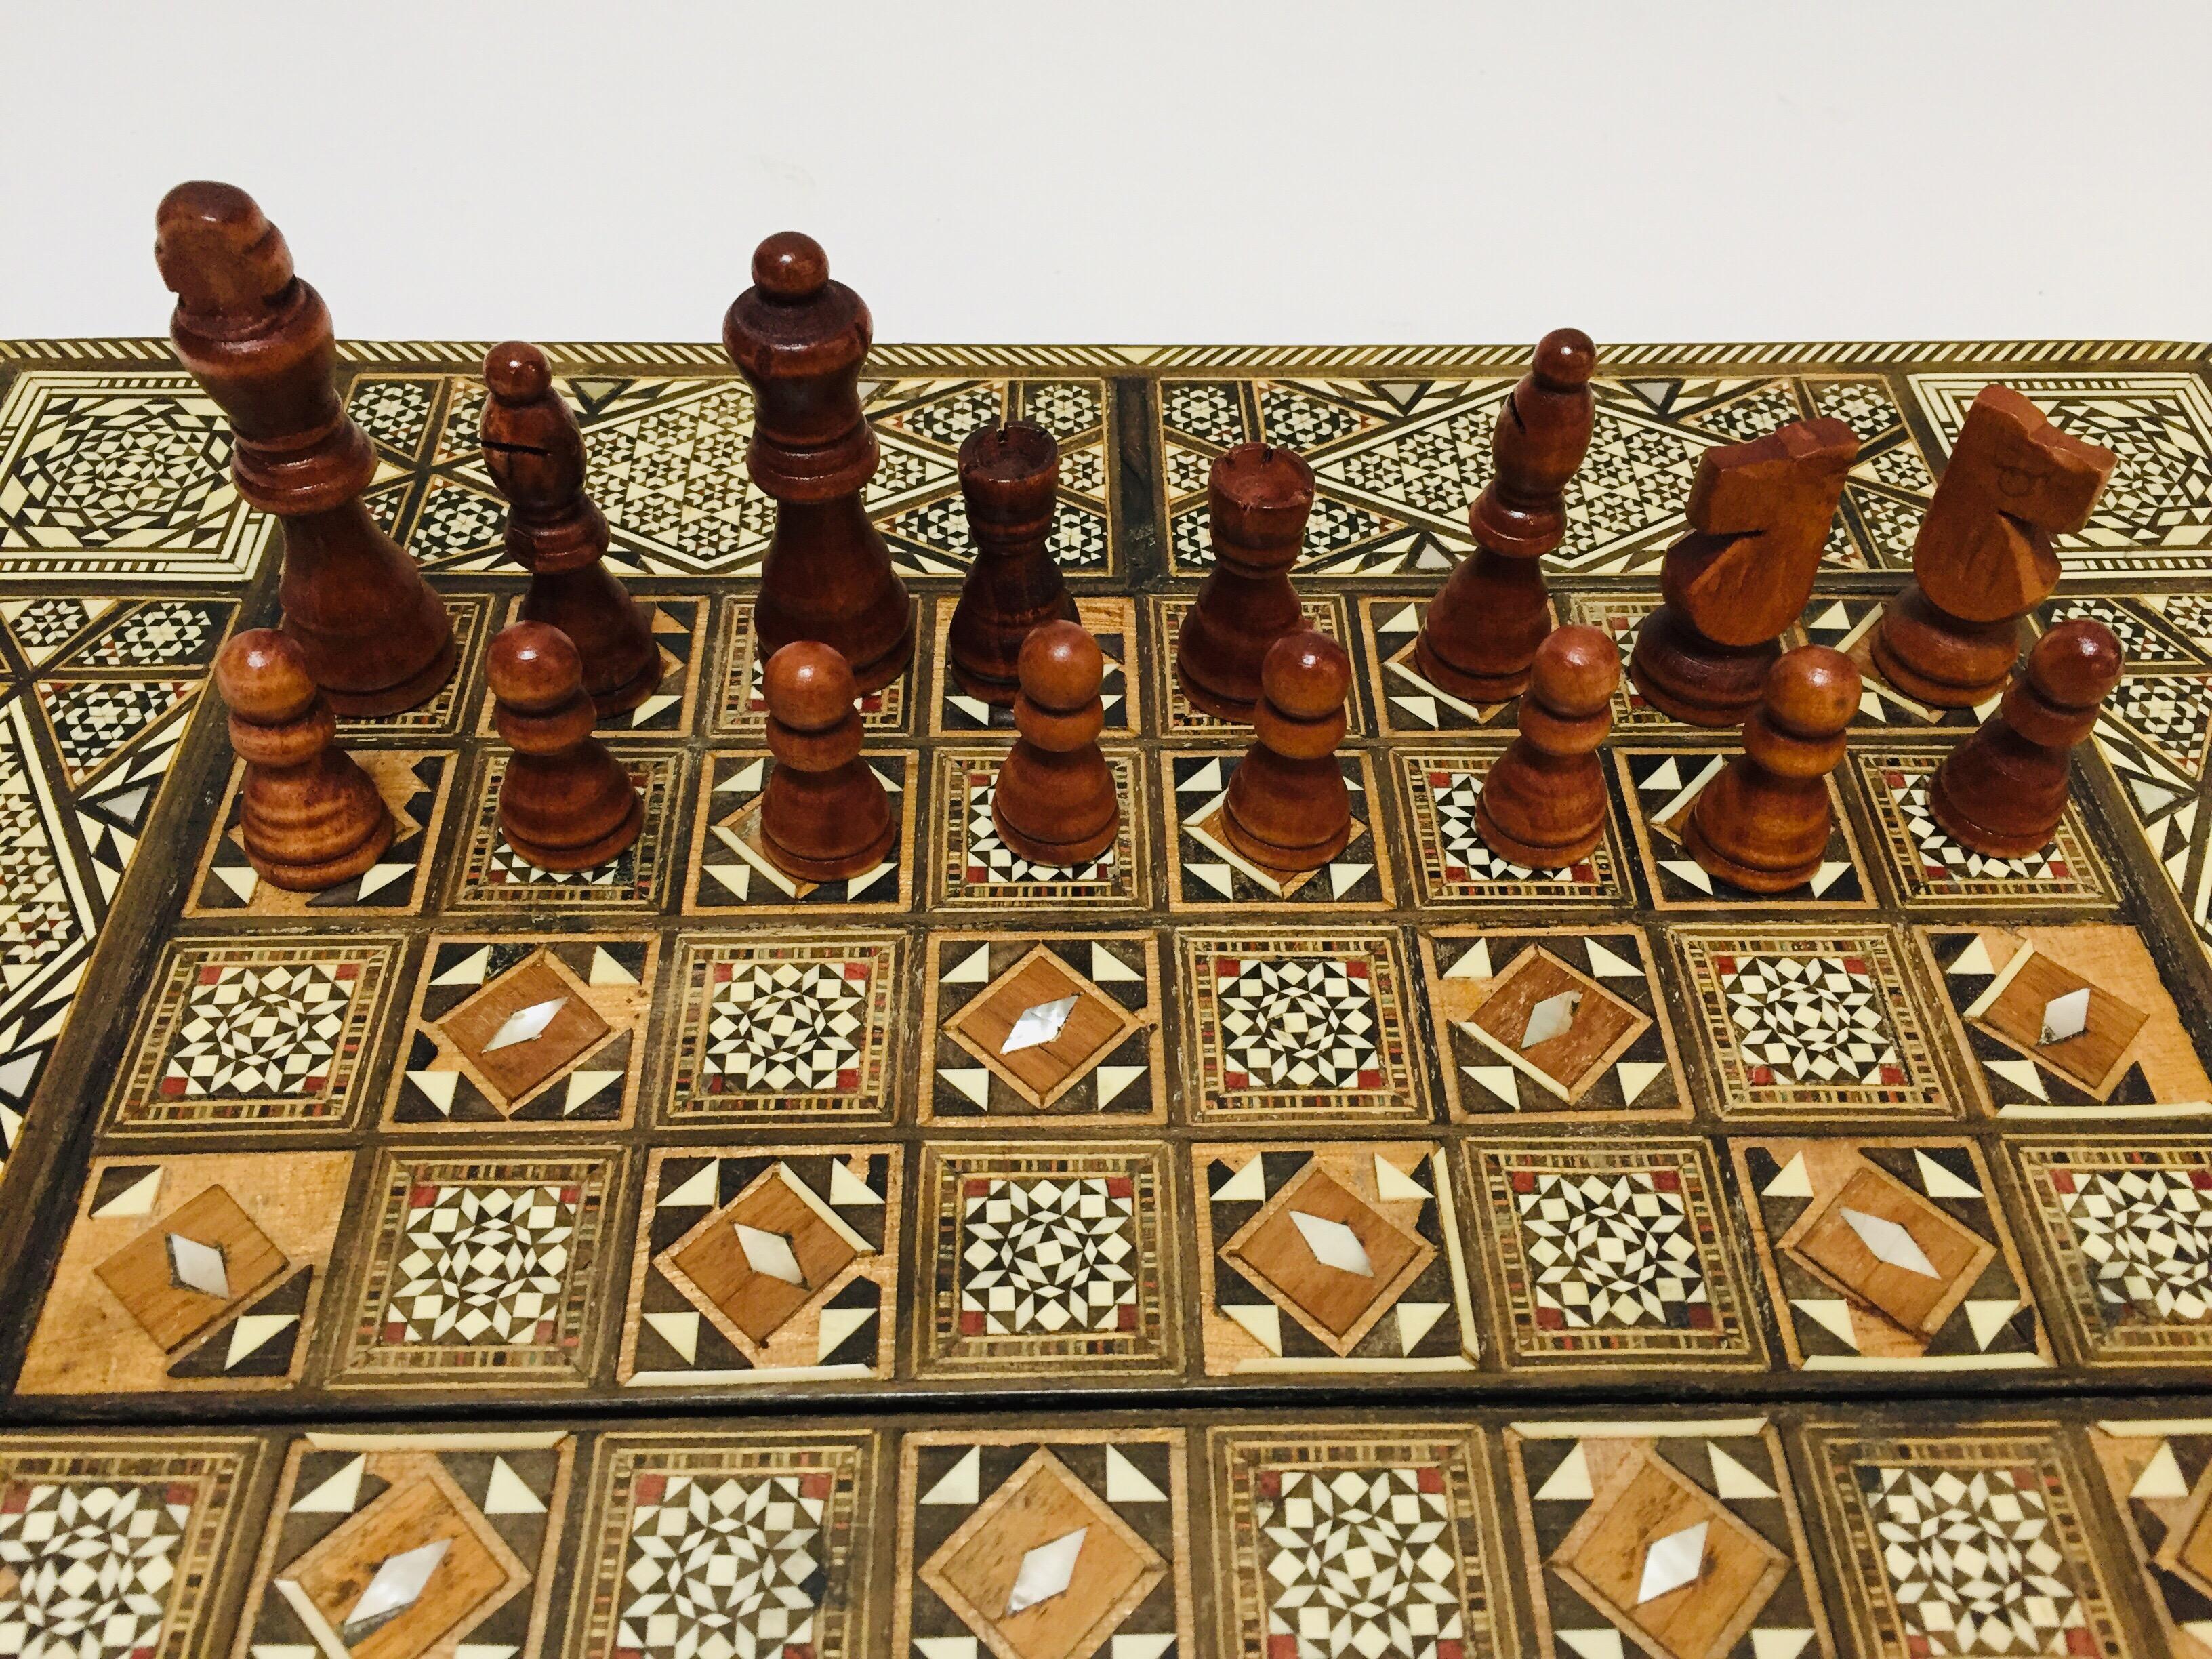 Vieux grand jeu complet de backgammon et d'echecs en mosaique incrustee syrienne 9